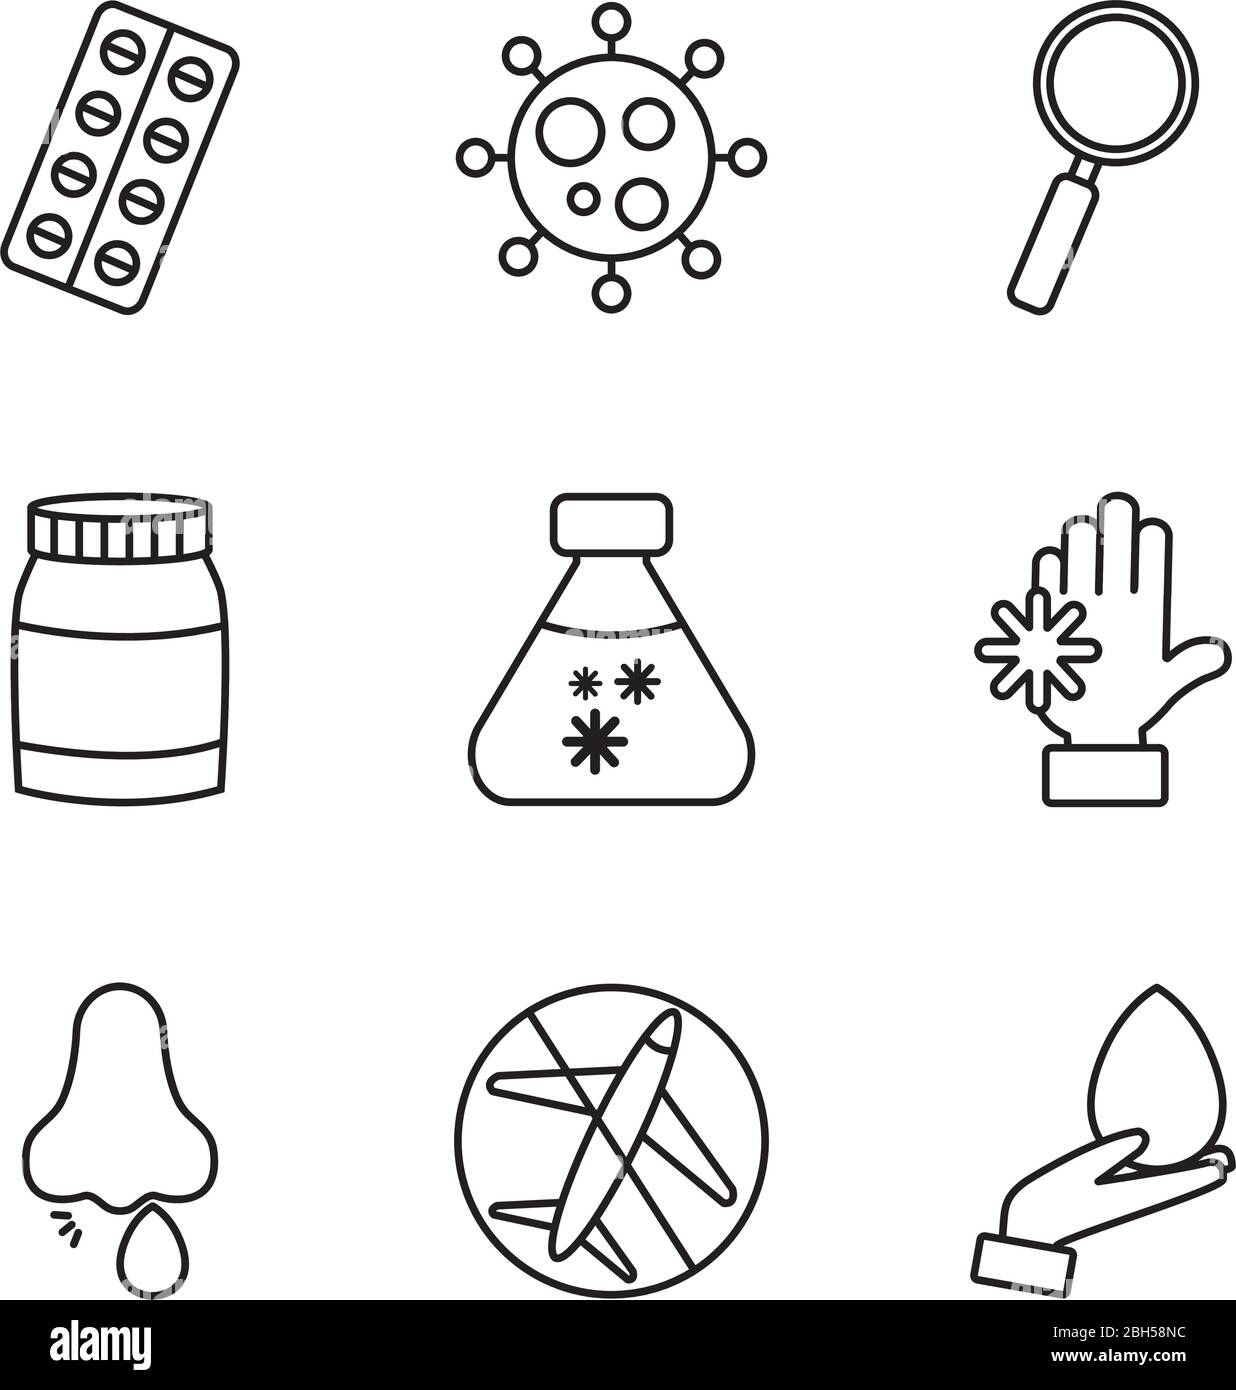 Hände und Coronavirus preventions Symbol auf weißem Hintergrund, Linienstil, Vektor-Illustration gesetzt Stock Vektor